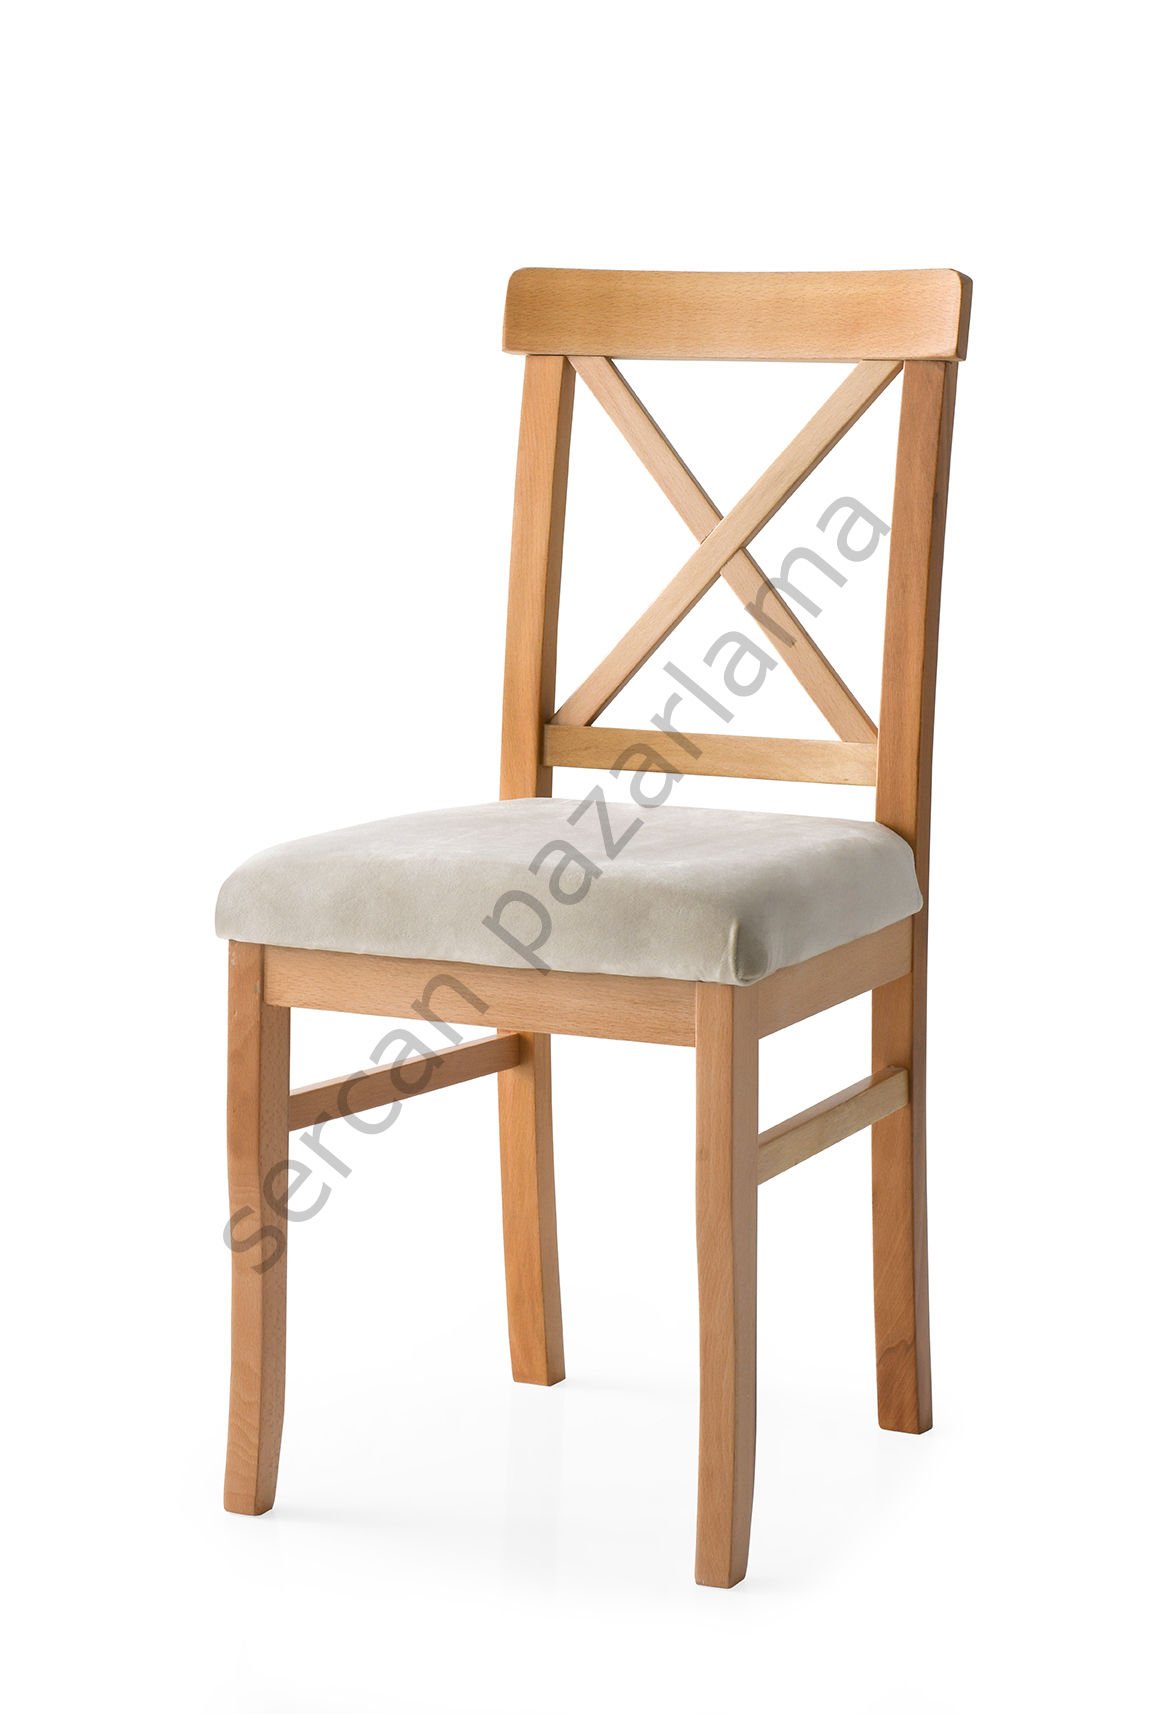 2052 - Alaçatı Sandalye - Naturel/Krem